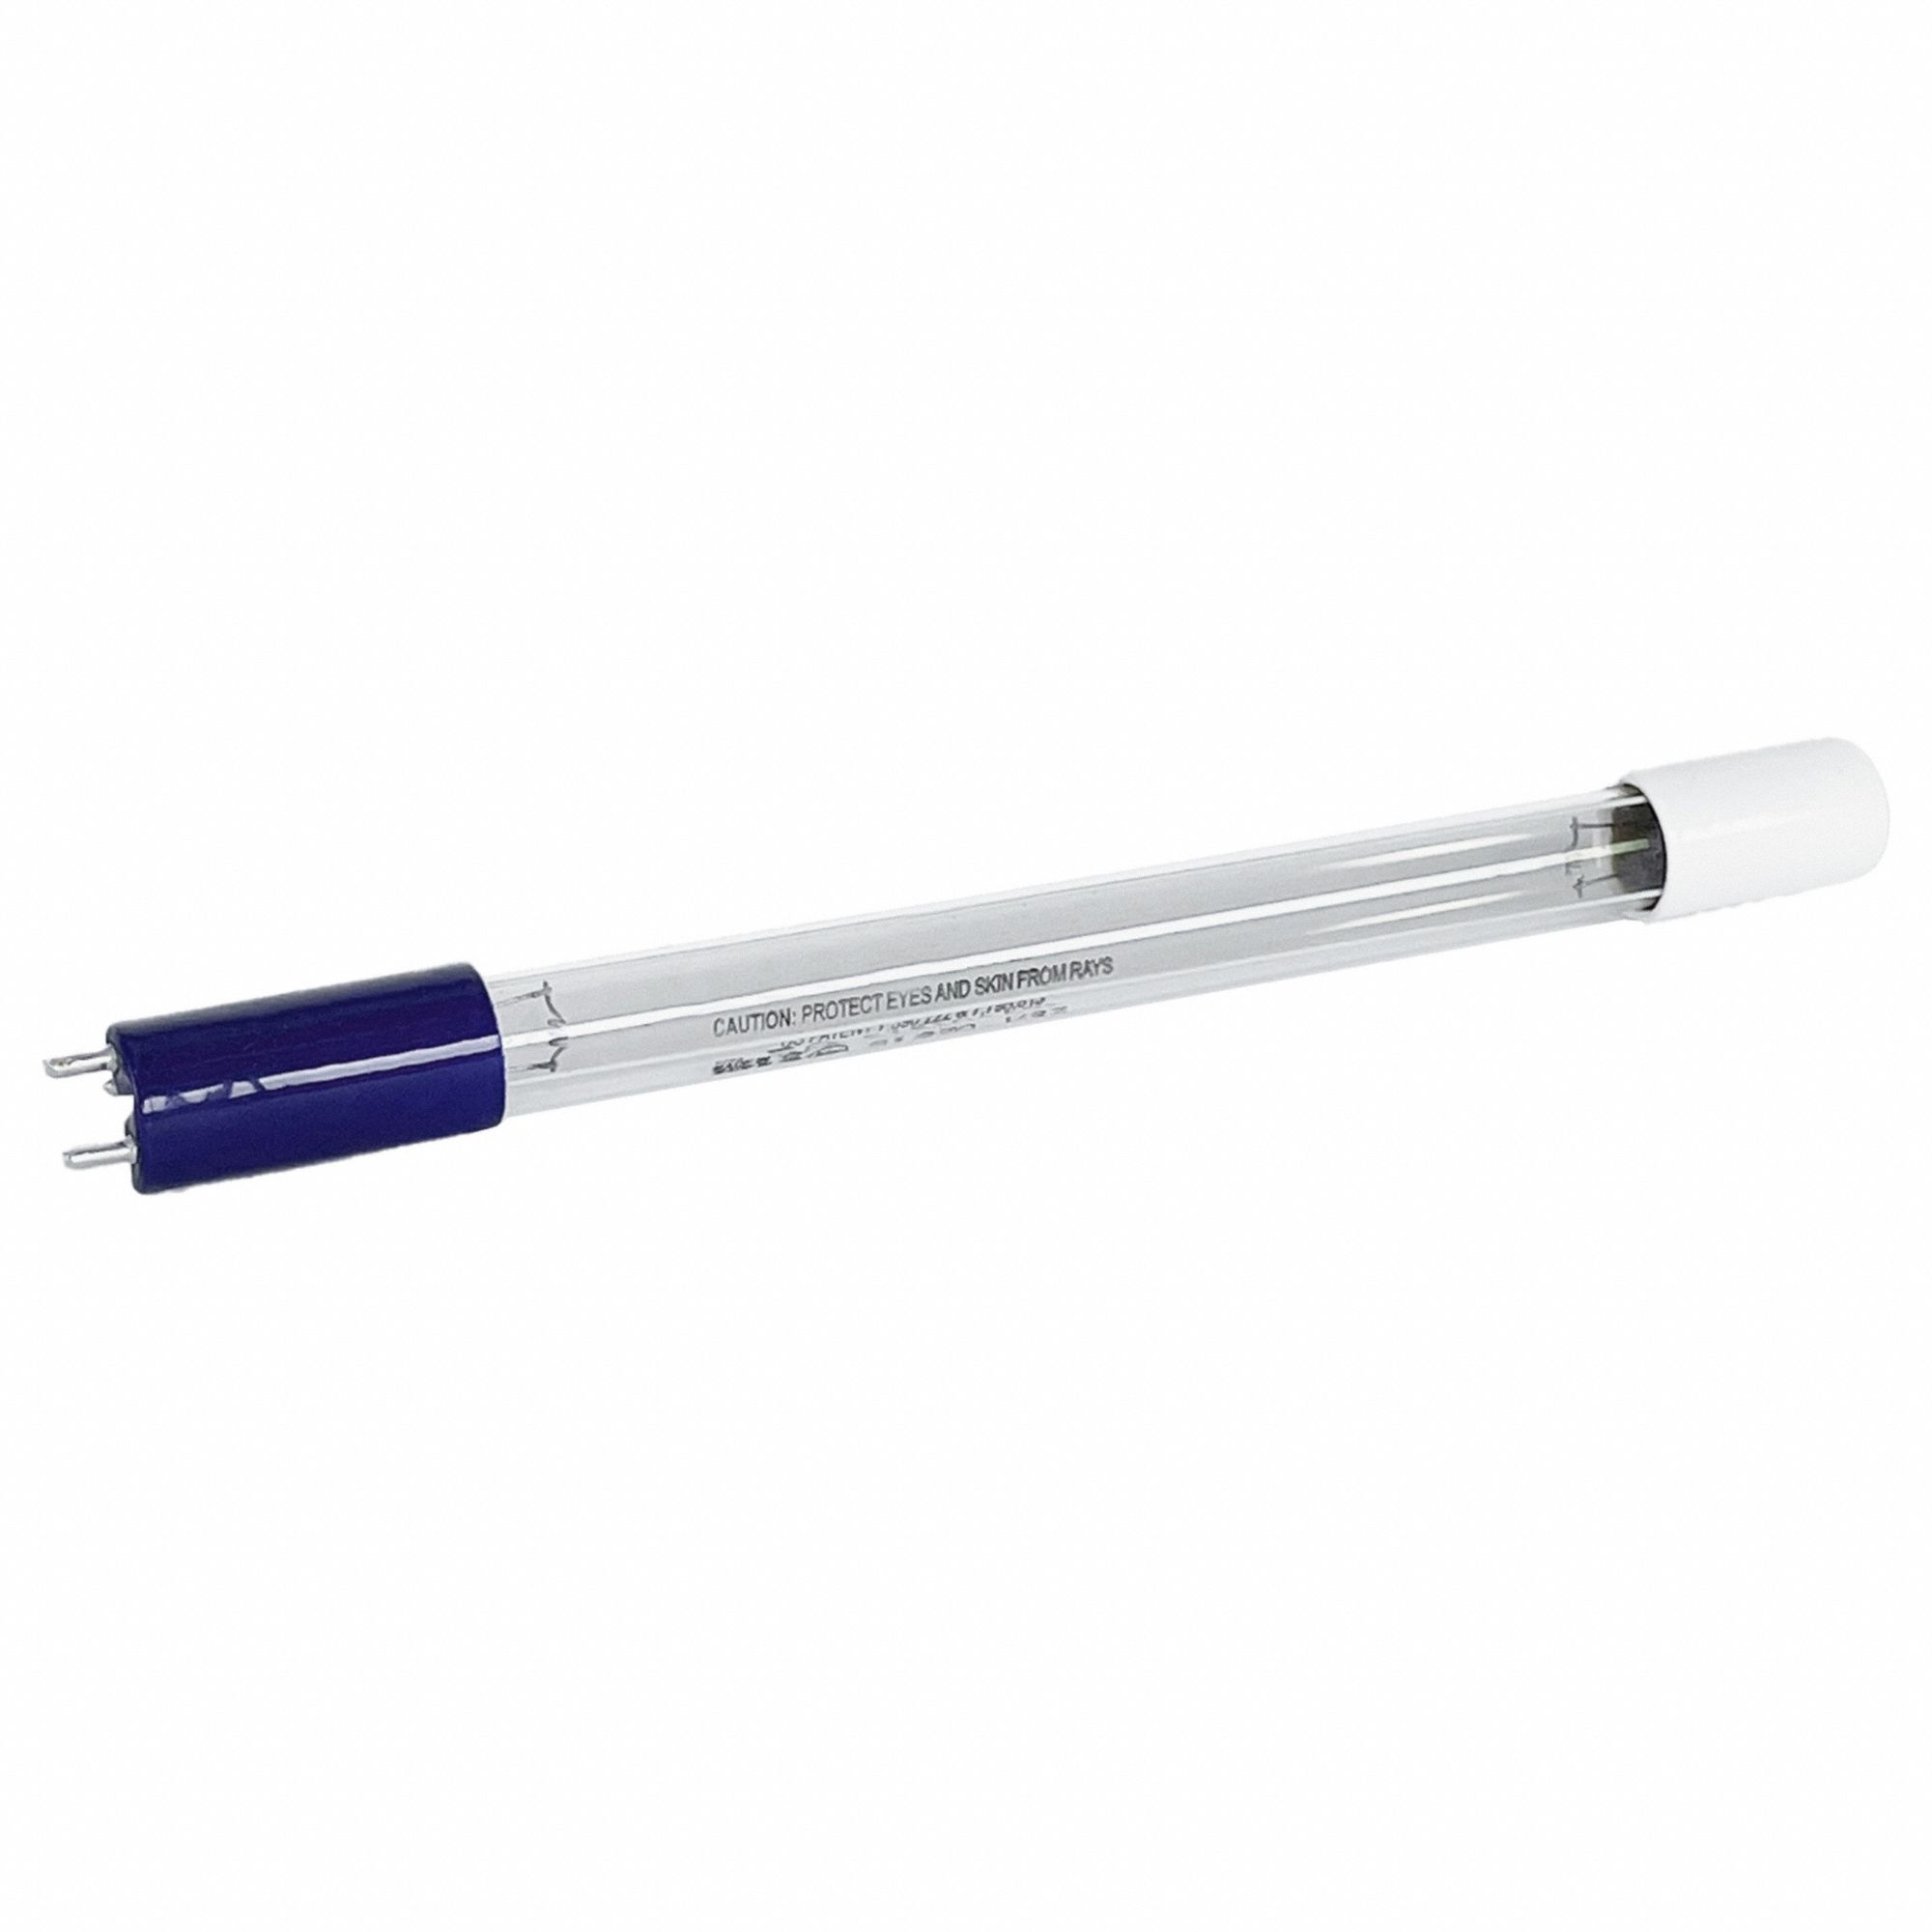 CLiR 5000 UV Bulb: Type I